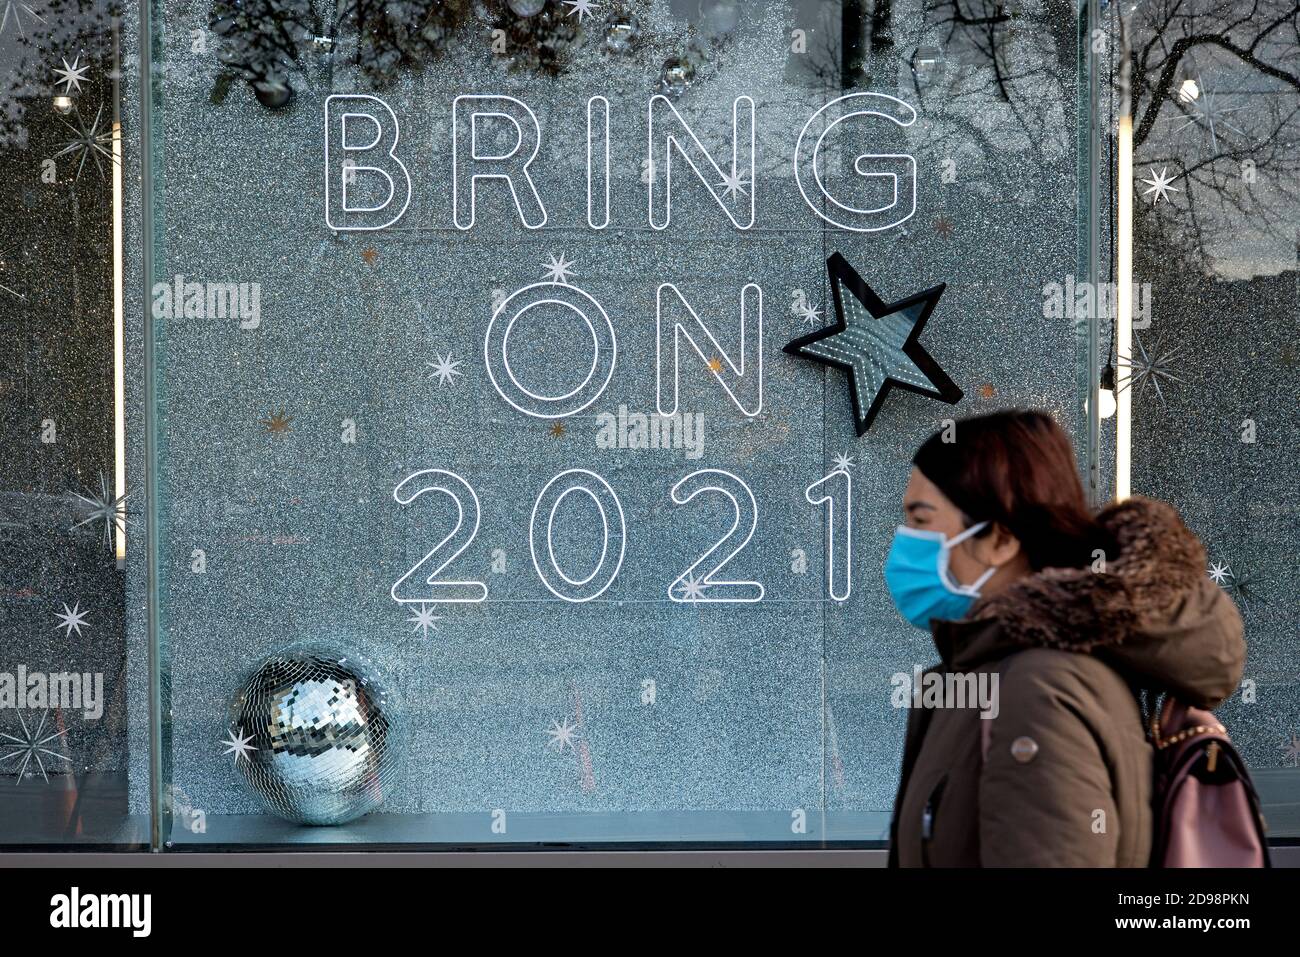 St Andrew Square, Edinburgh, 3. November 2020. Frau mit Gesichtsmaske geht an einem Schild im Fenster von Harvey Nichols vorbei, auf dem steht: 'Bring On 2021'. Stockfoto